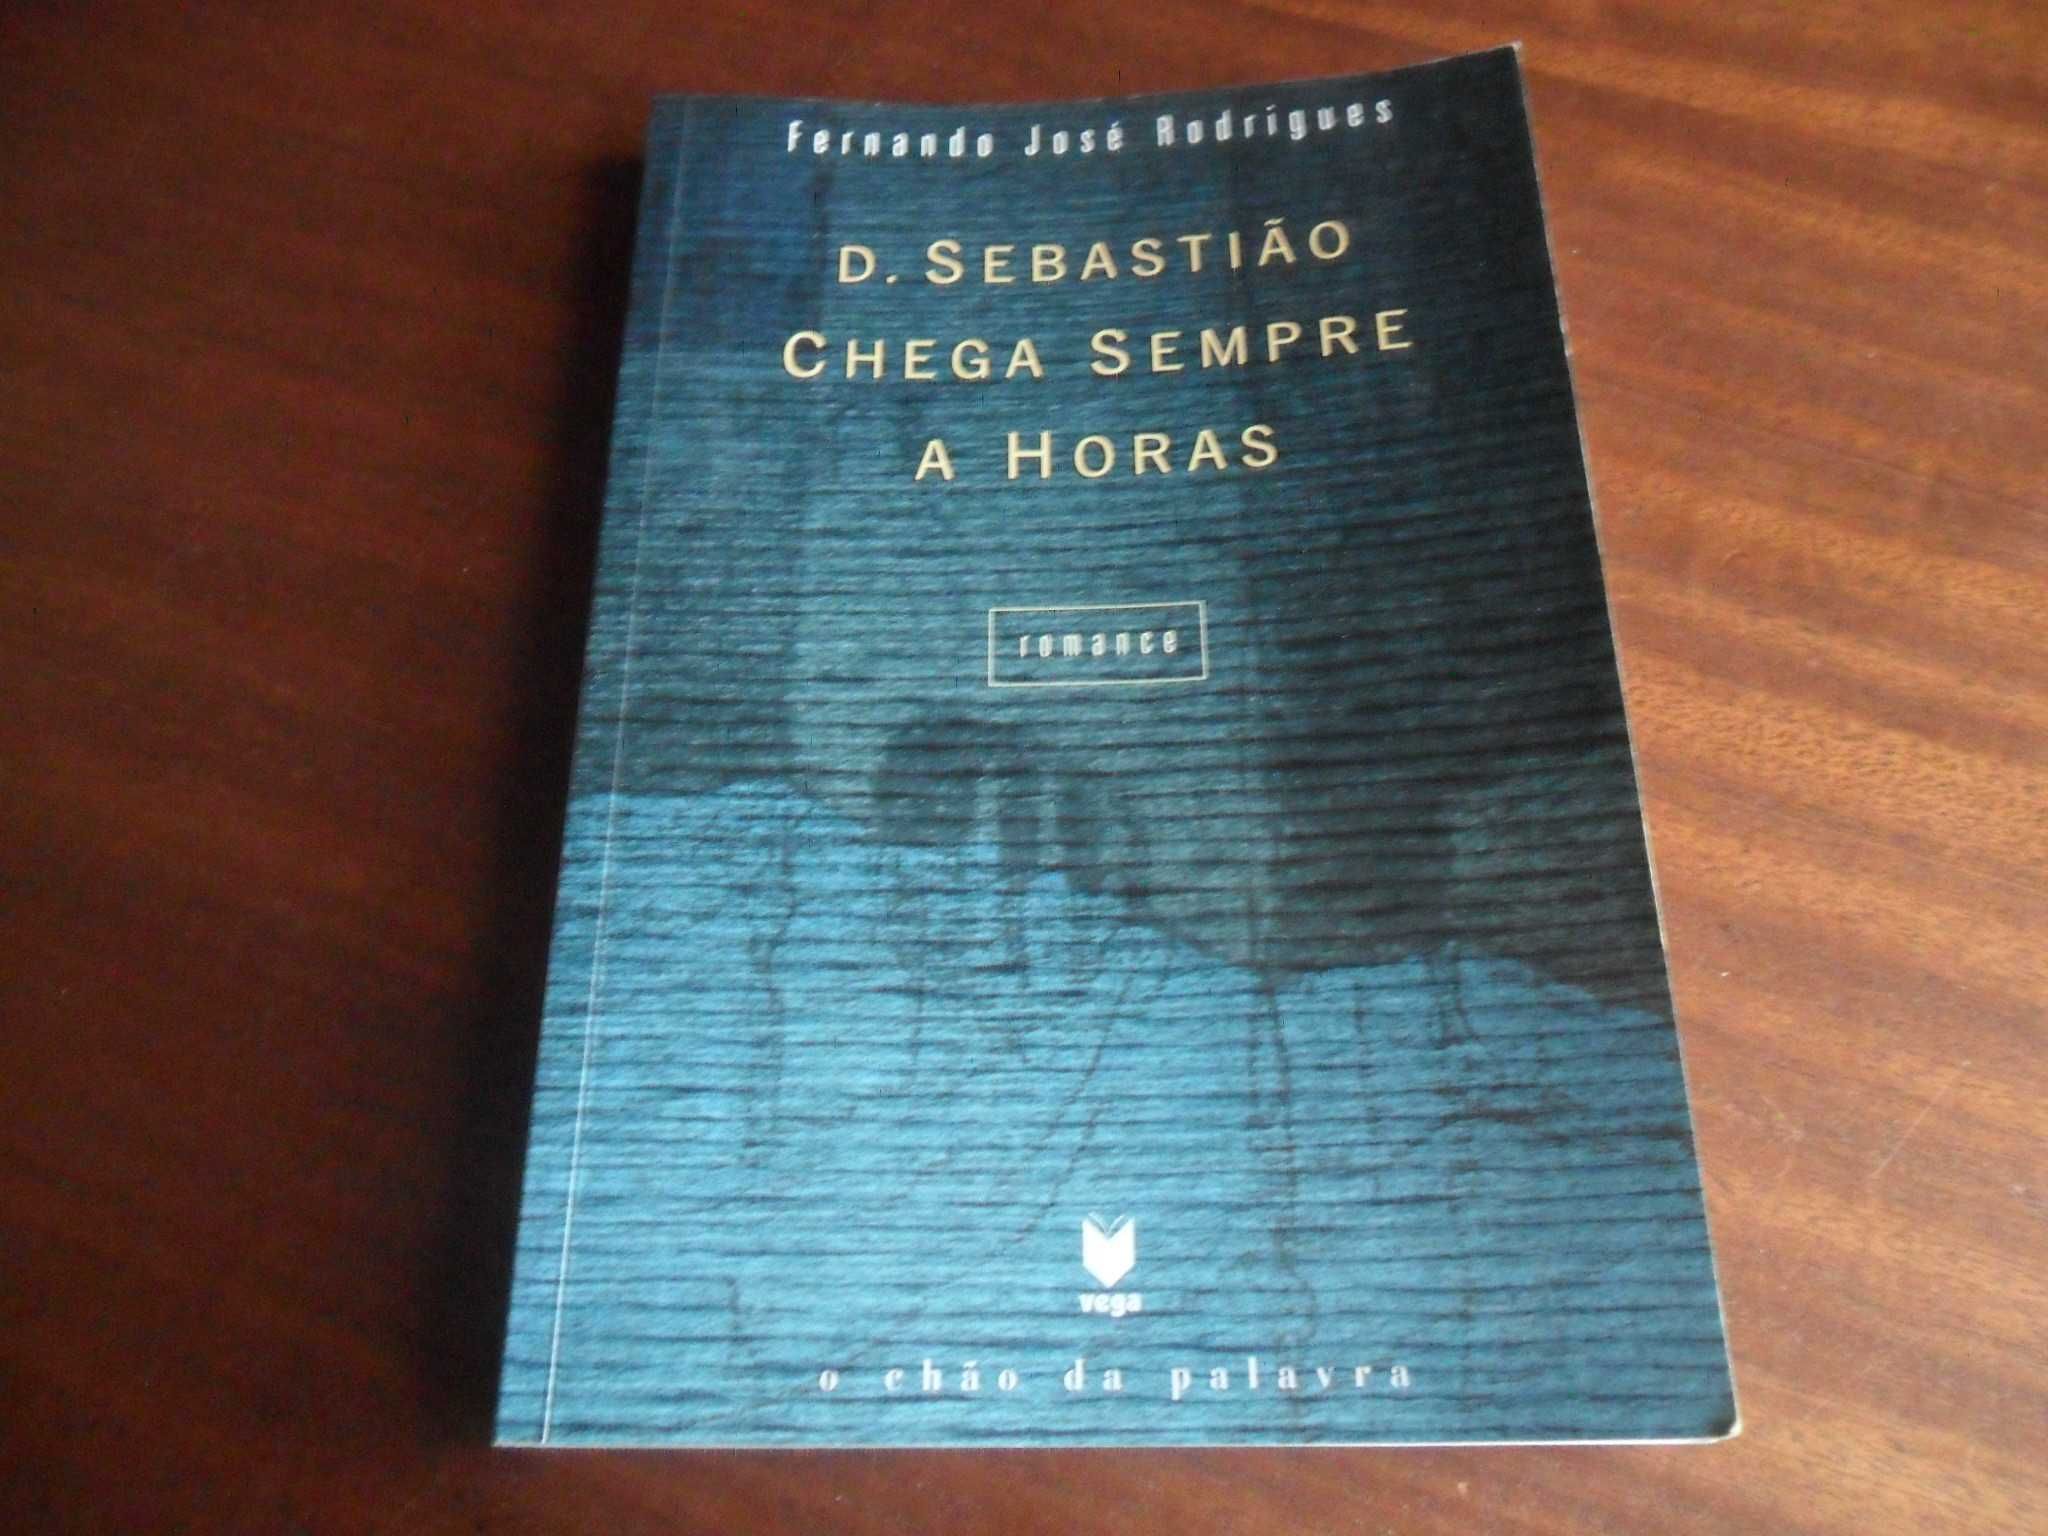 "D. Sebastião Chega Sempre a Horas" de Fernando José Rodrigues - 1999